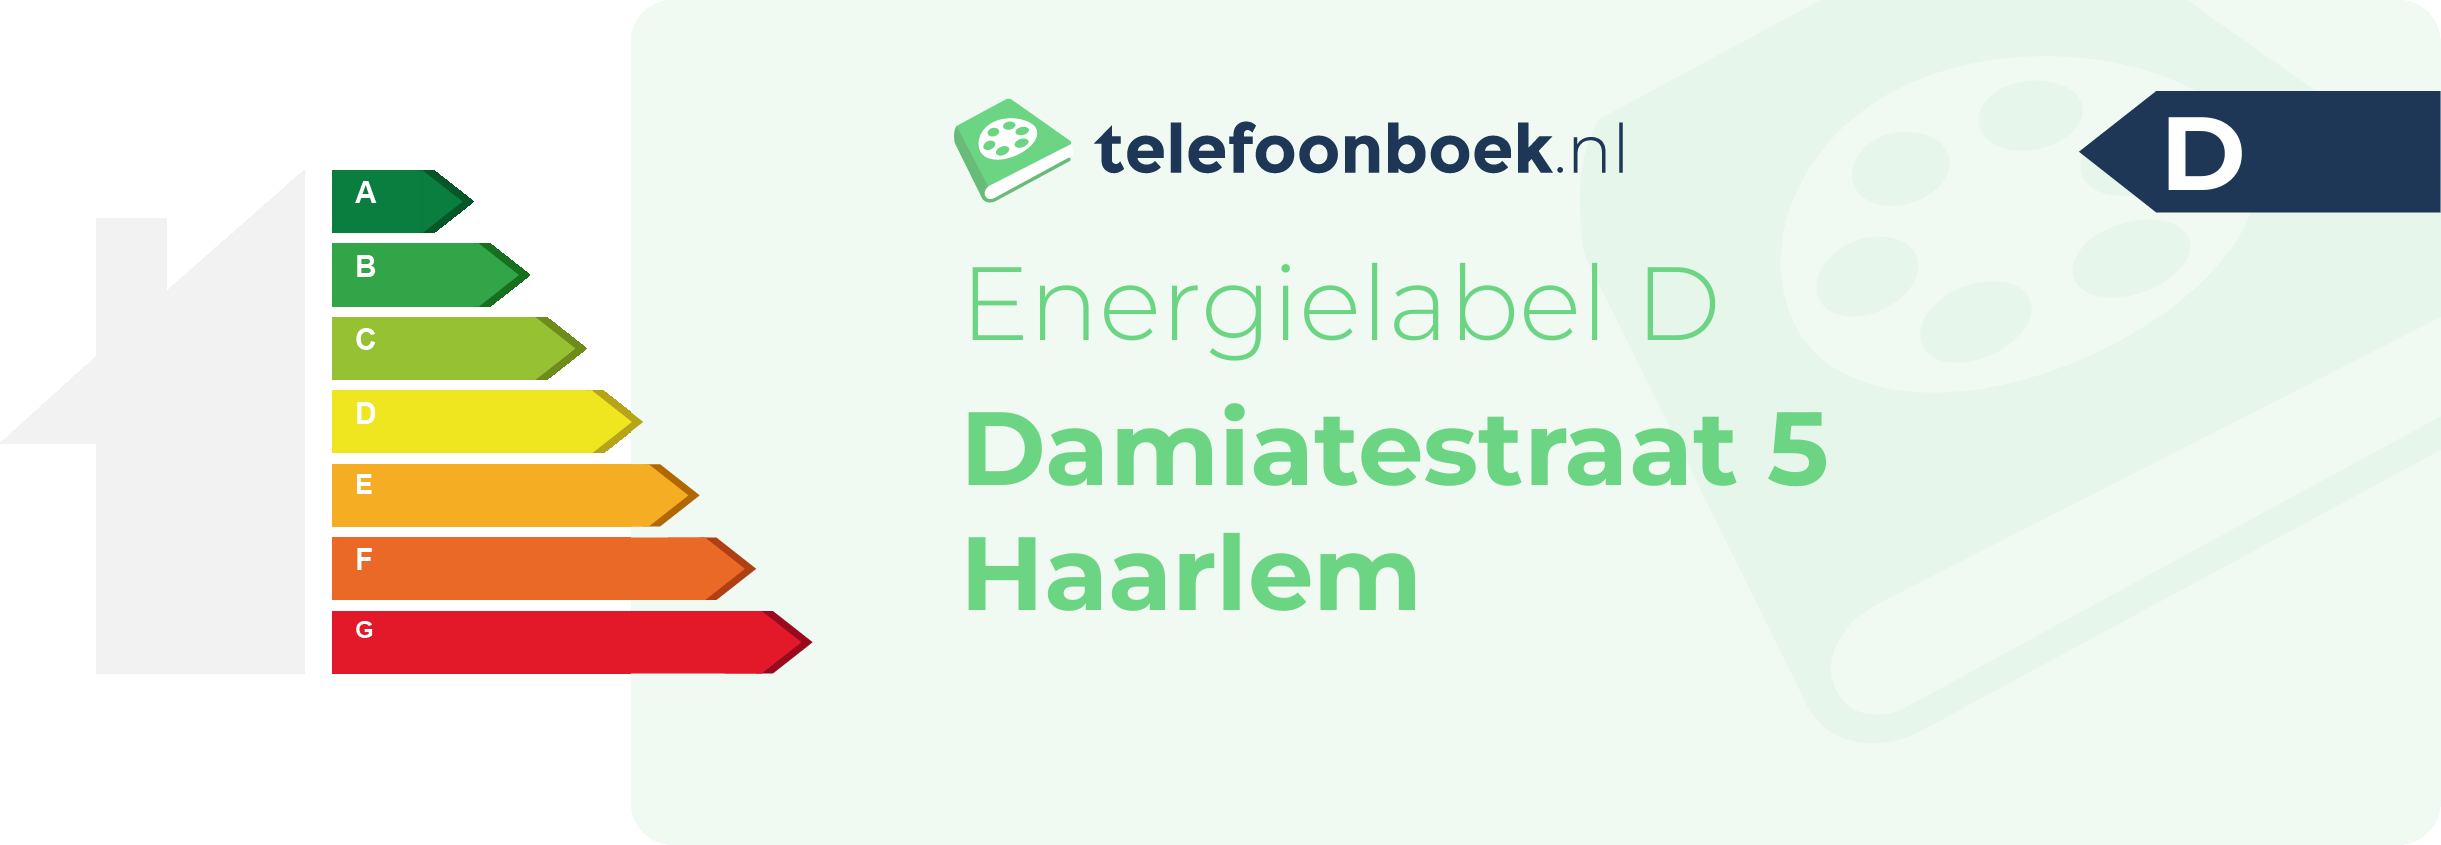 Energielabel Damiatestraat 5 Haarlem